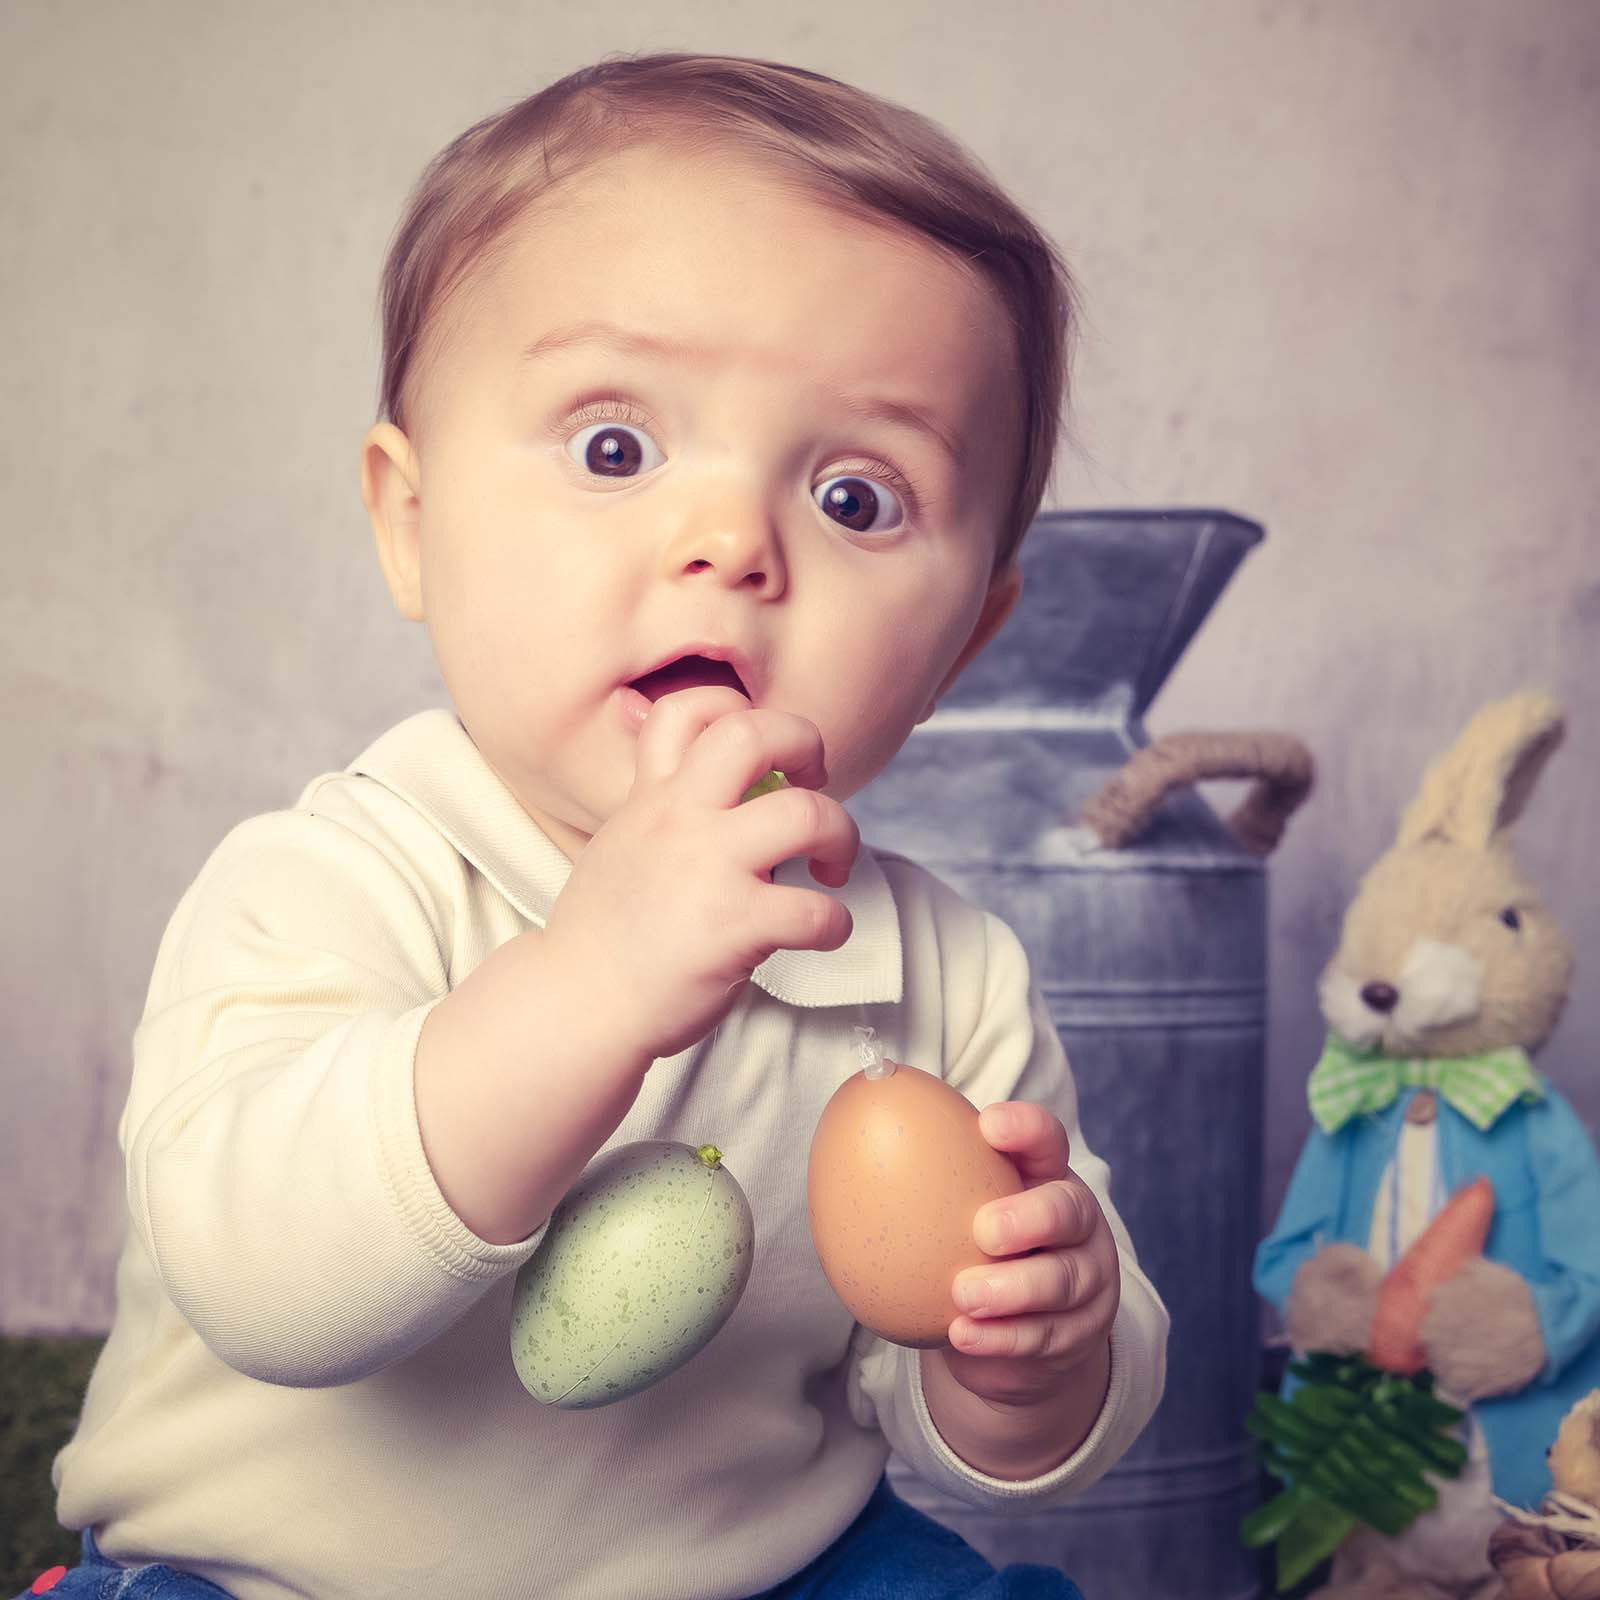 portrait d'un bébé avec de grands yeux surpris qui fait tomber deux œufs en plastique